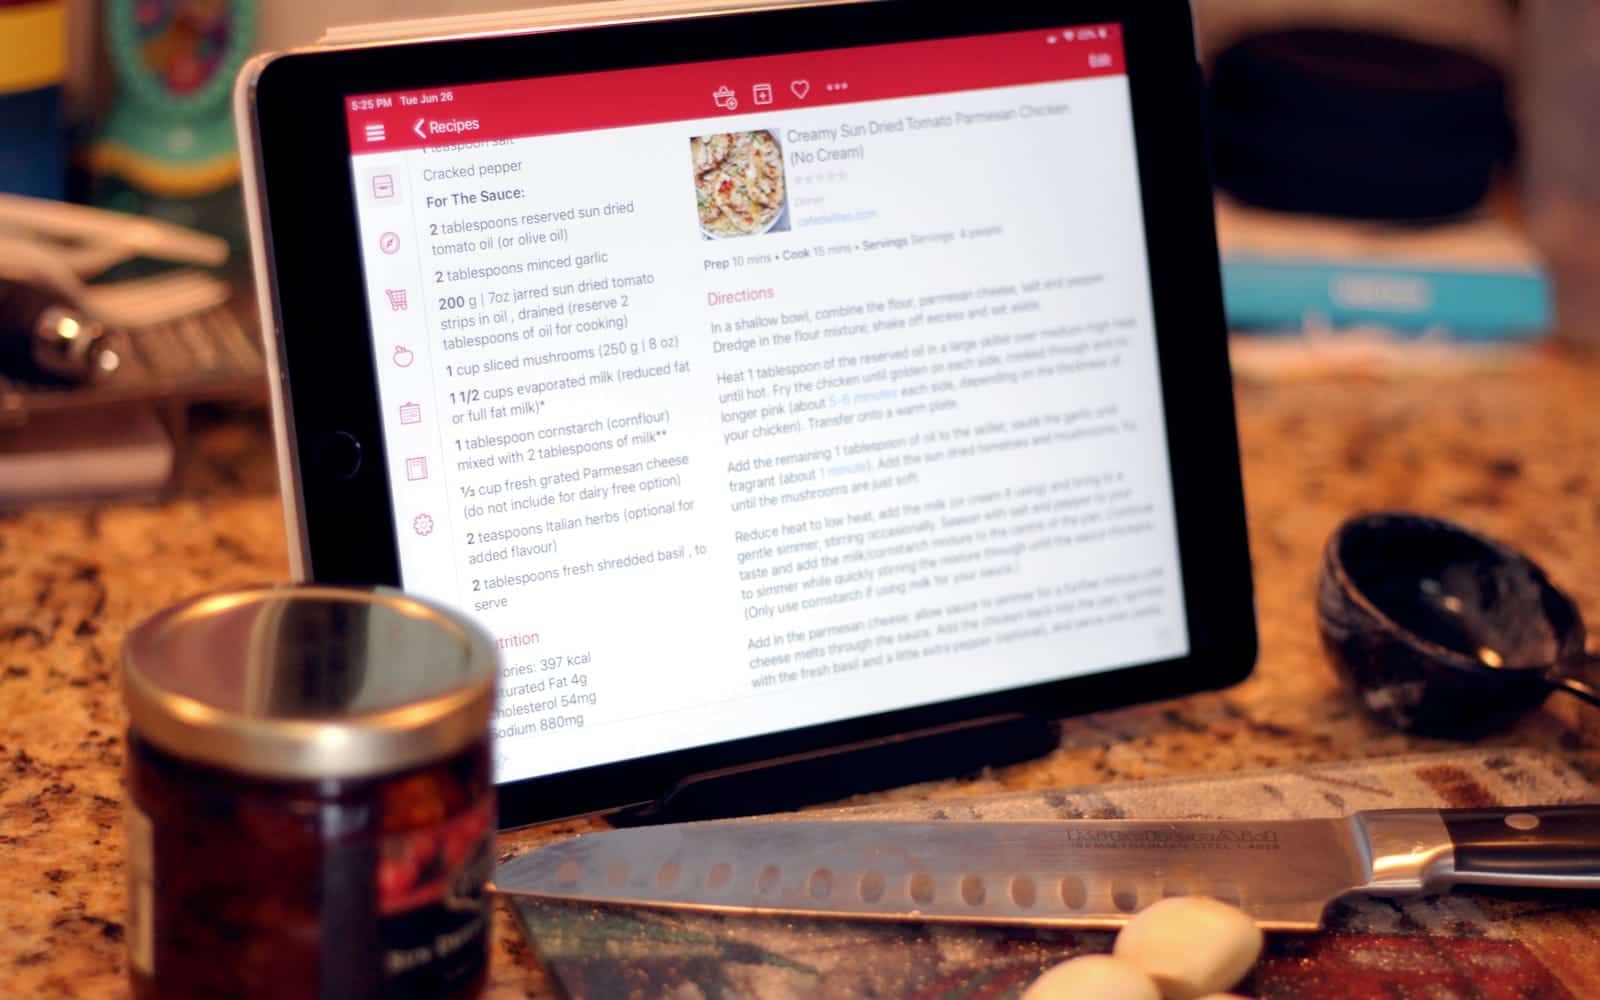 Paprika on iPad with kitchen items around